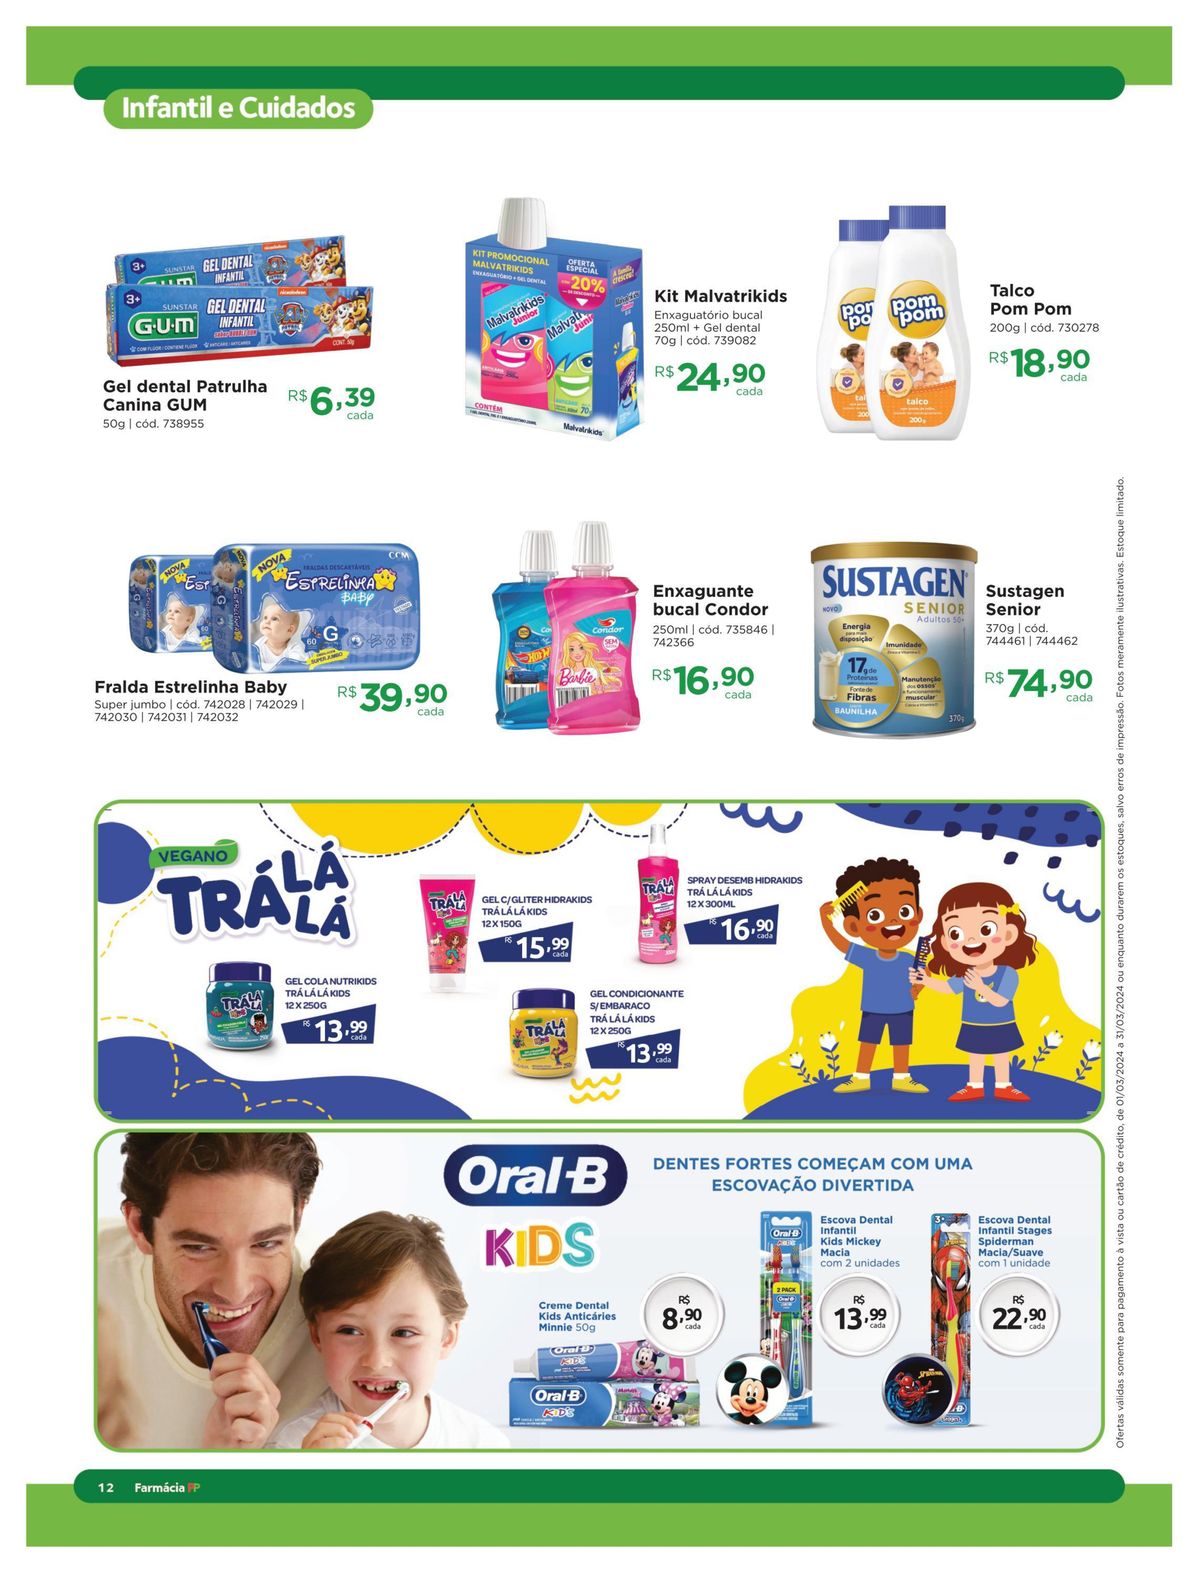 Kits de higiene bucal para crianças com desconto